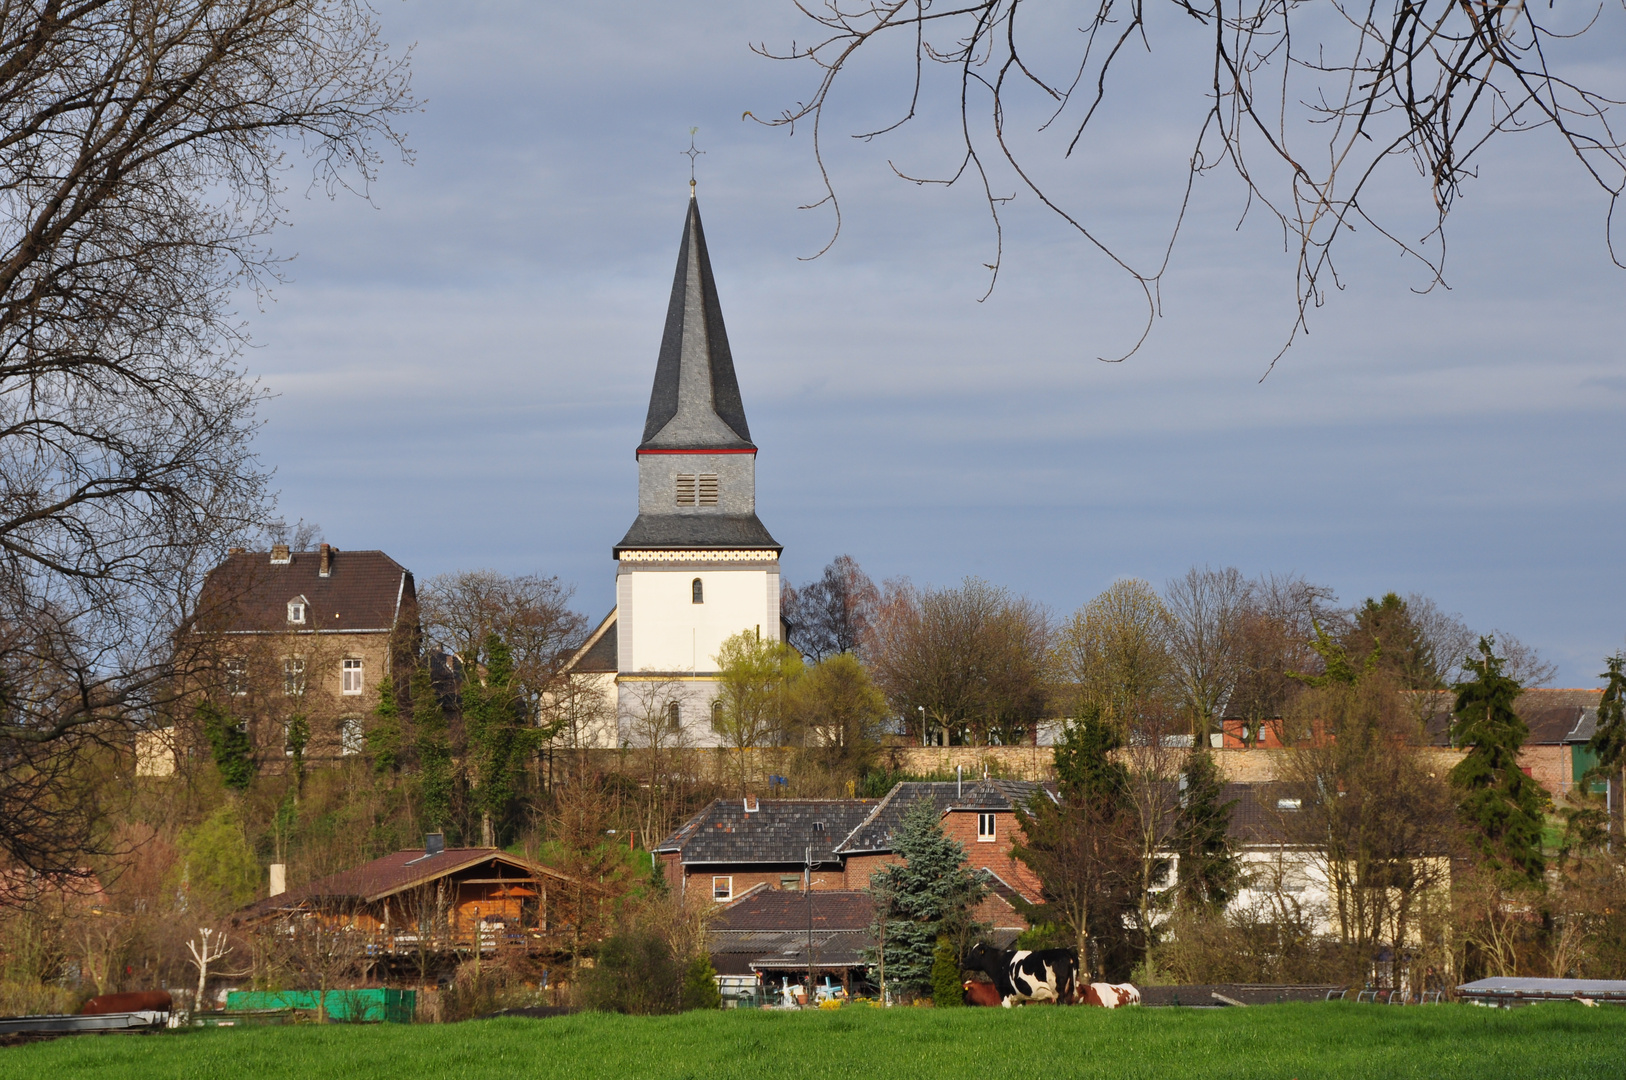 Hochkirchen